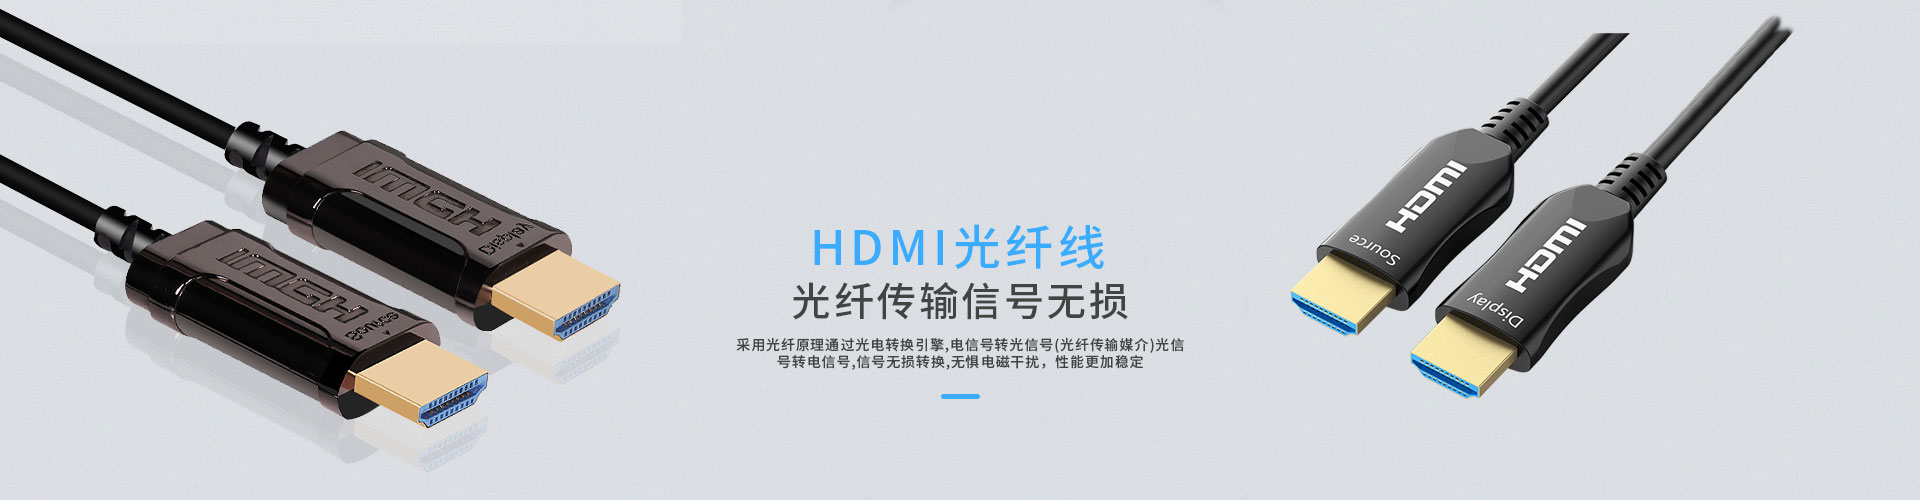 仙桃光纤HDMI